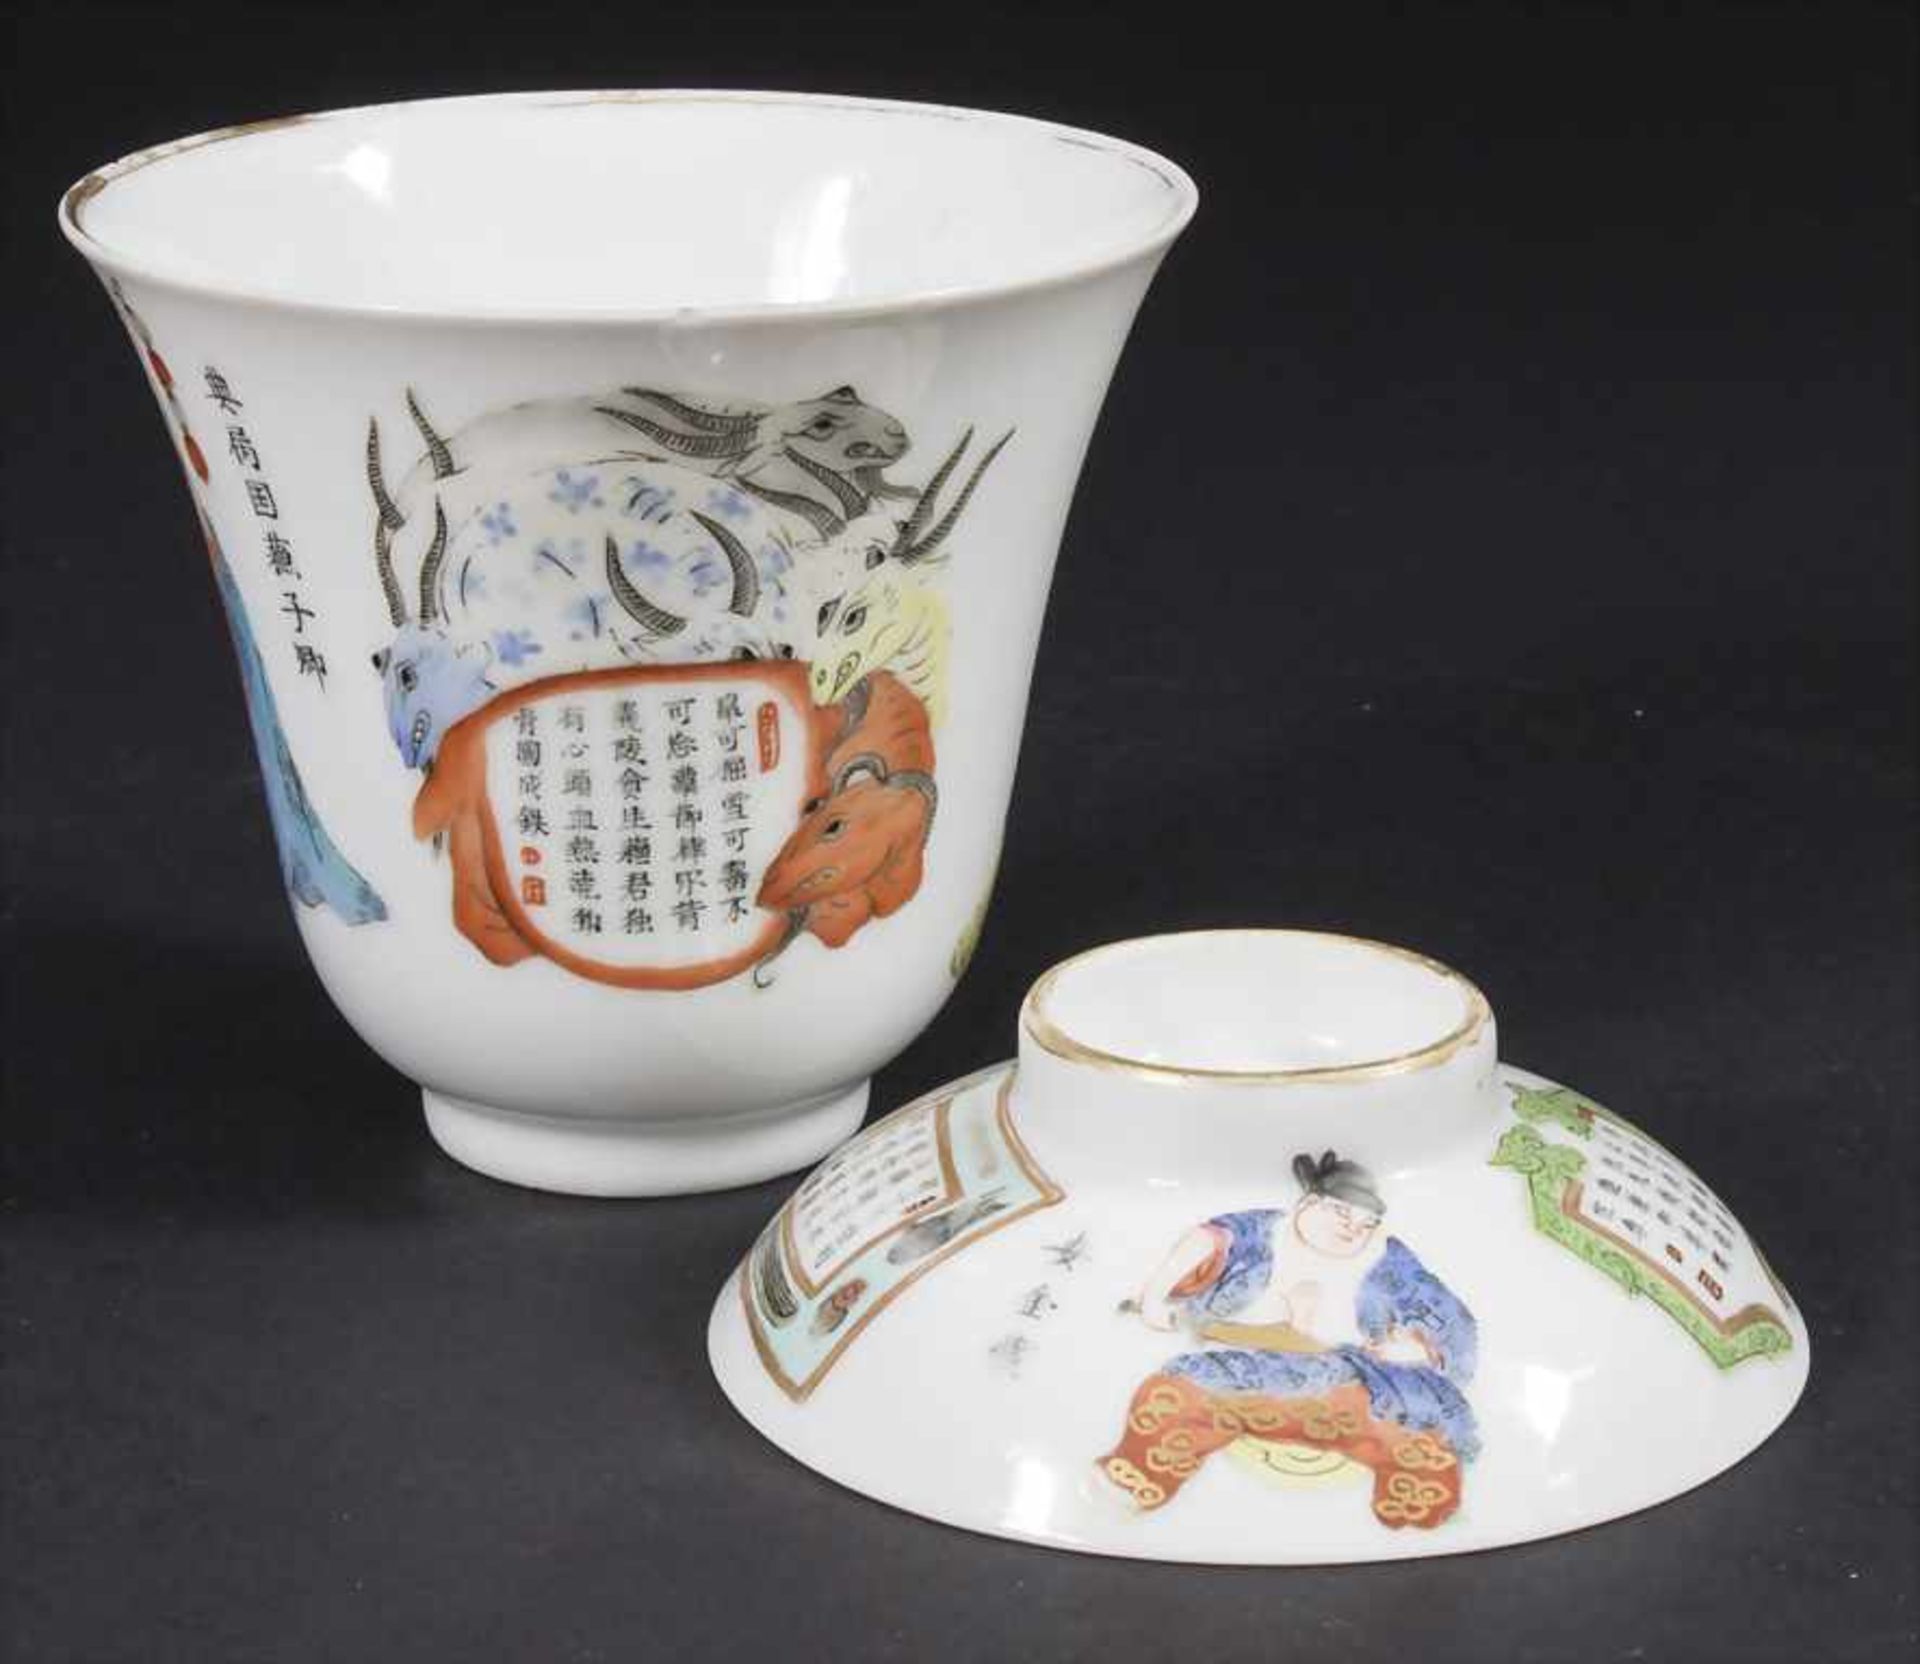 Porzellan-Deckelkumme / A porcelain lidded bowl, China, Qing-Dynastie (1644-1911), 18./19. Jh. - Bild 5 aus 6